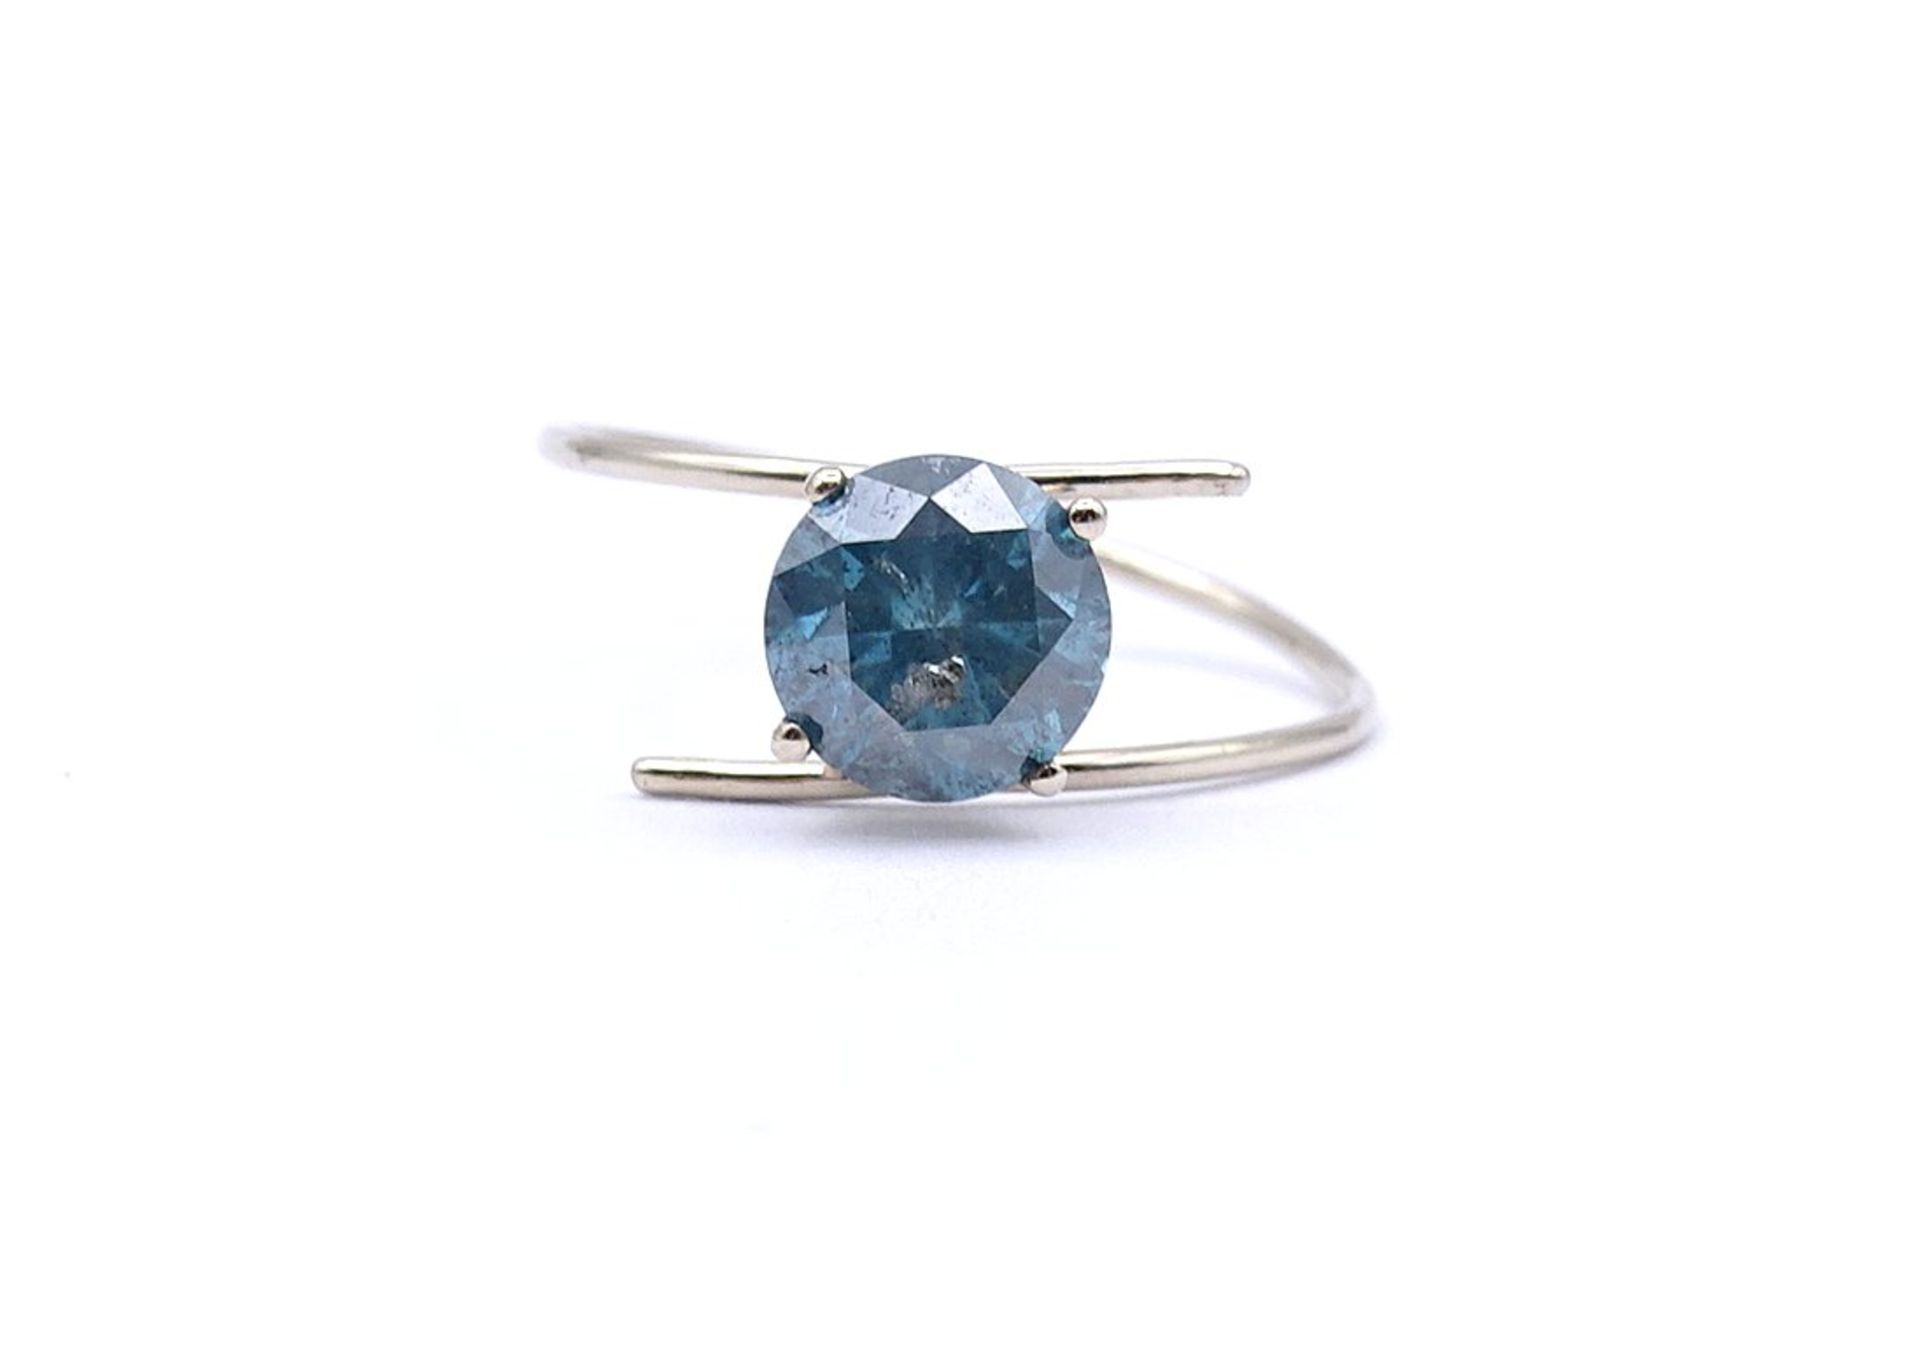 Goldring mit einem blauen Diamant 1,0ct., Gold 14K, ungestempelt- geprüft, 0,84g., RG 49